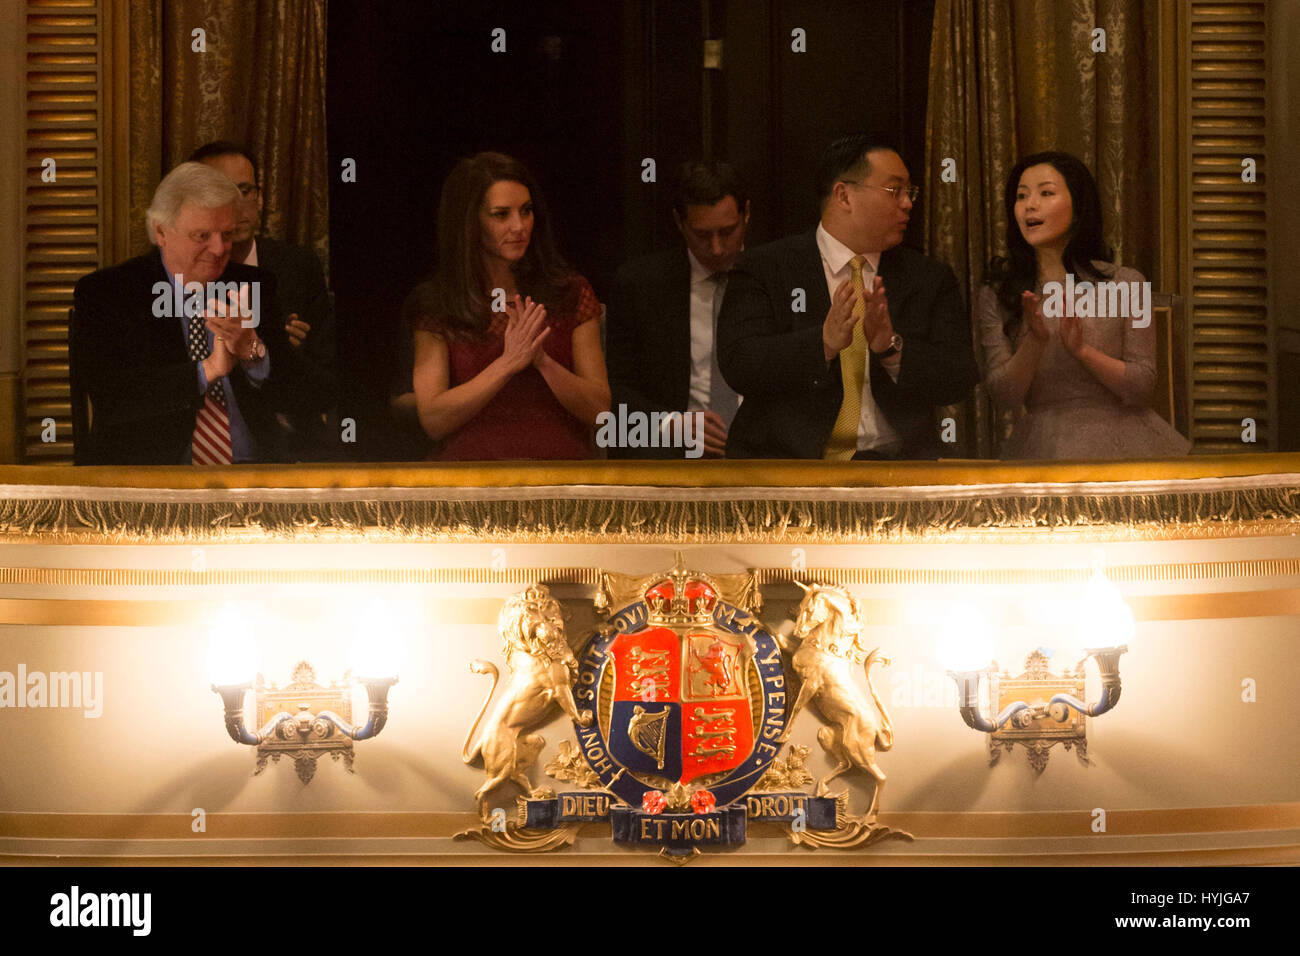 (De gauche à droite) Michael Grade, le Seigneur de la duchesse de Cambridge, le Dr Johnny député et sa femme Vicki dans la loge royale pour la soirée d'ouverture de la 42e Rue, dans les soins de l'Est Anglia Children's Hospice au Theatre Royal, Drury Lane, London. Banque D'Images